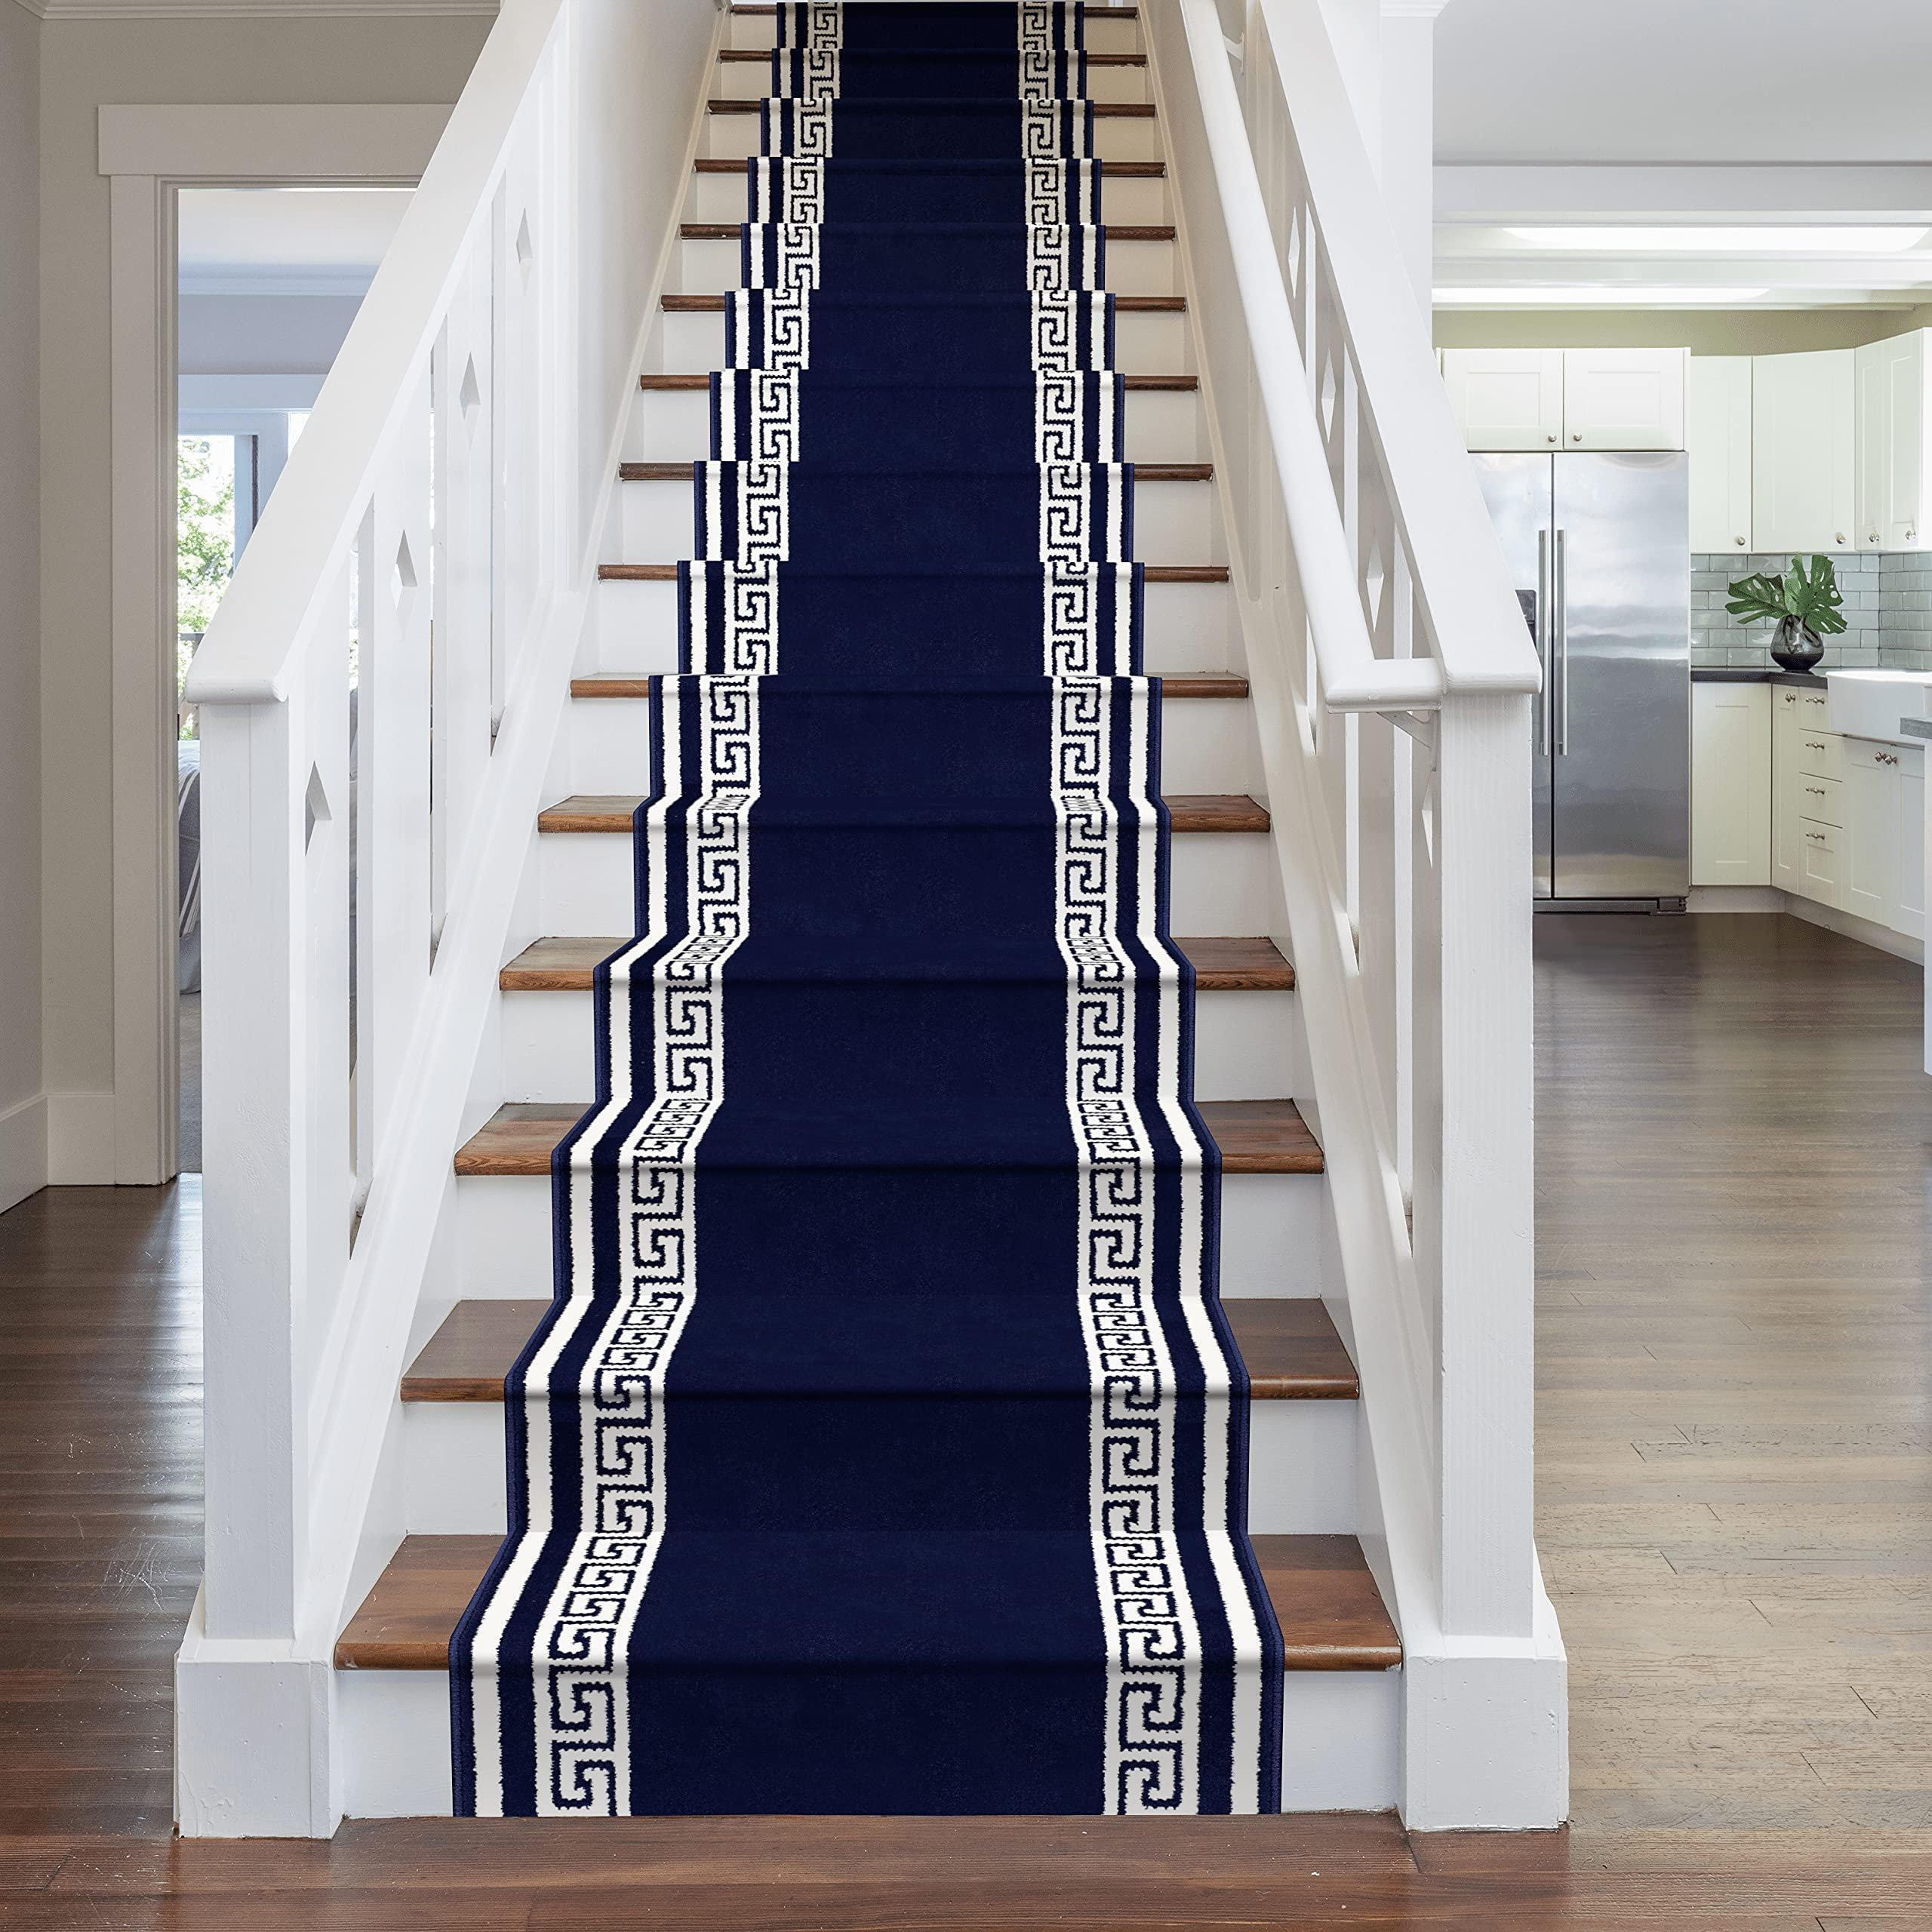 Blue Key Stair Carpet Runner - image 1